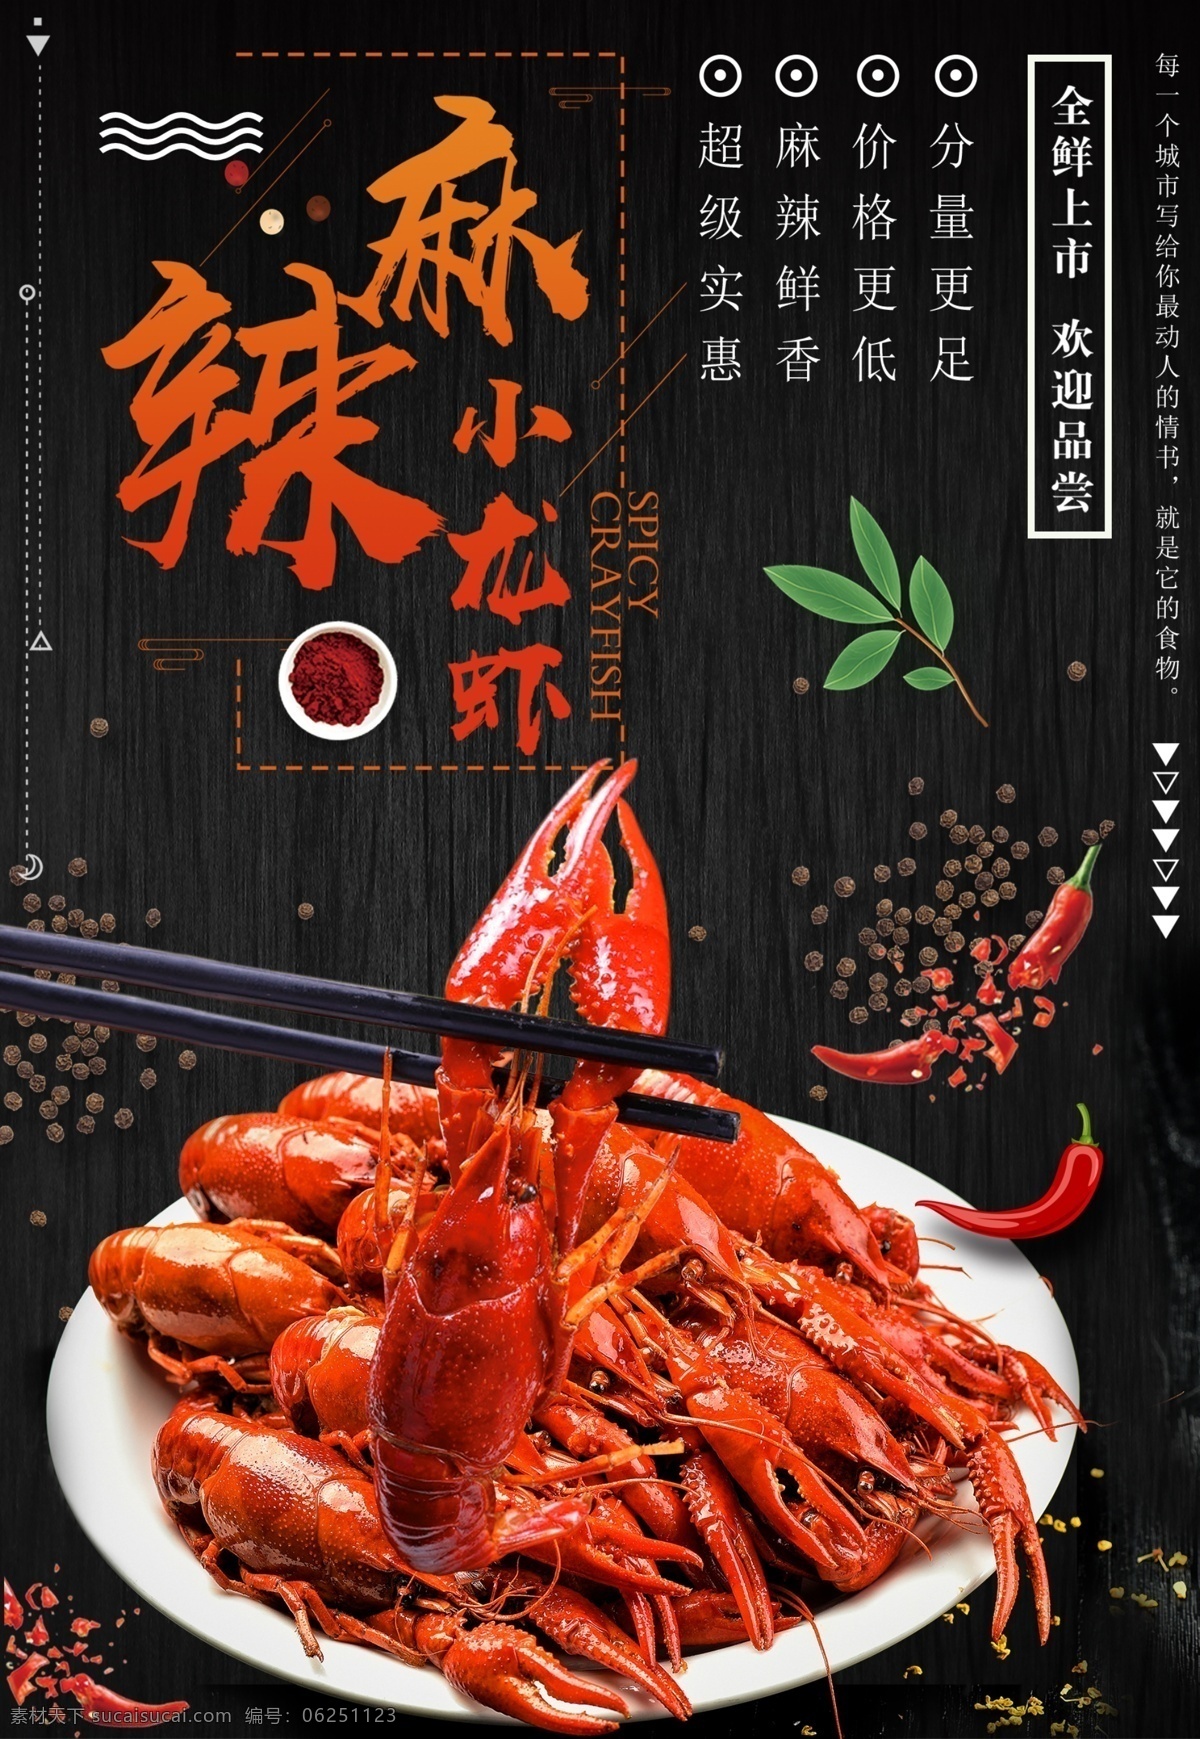 麻辣小龙虾 黑色 红色 全新上市 欢迎品尝 分量更足 价格更低 麻辣鲜香 超级实惠